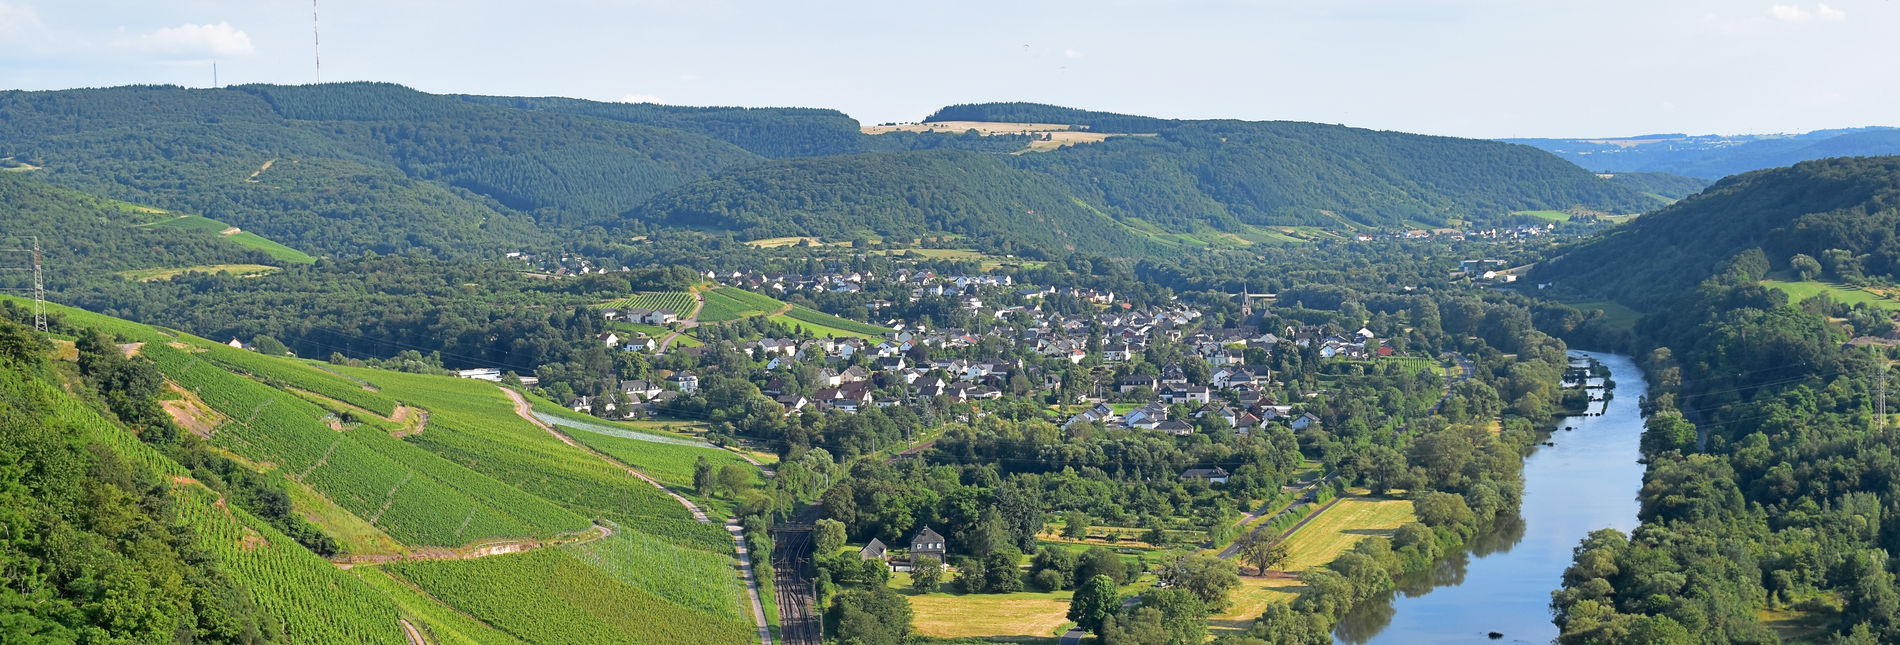 Wilthingen an der Saar - Weingut Borens - Saarwein, Riesling, Burgunder